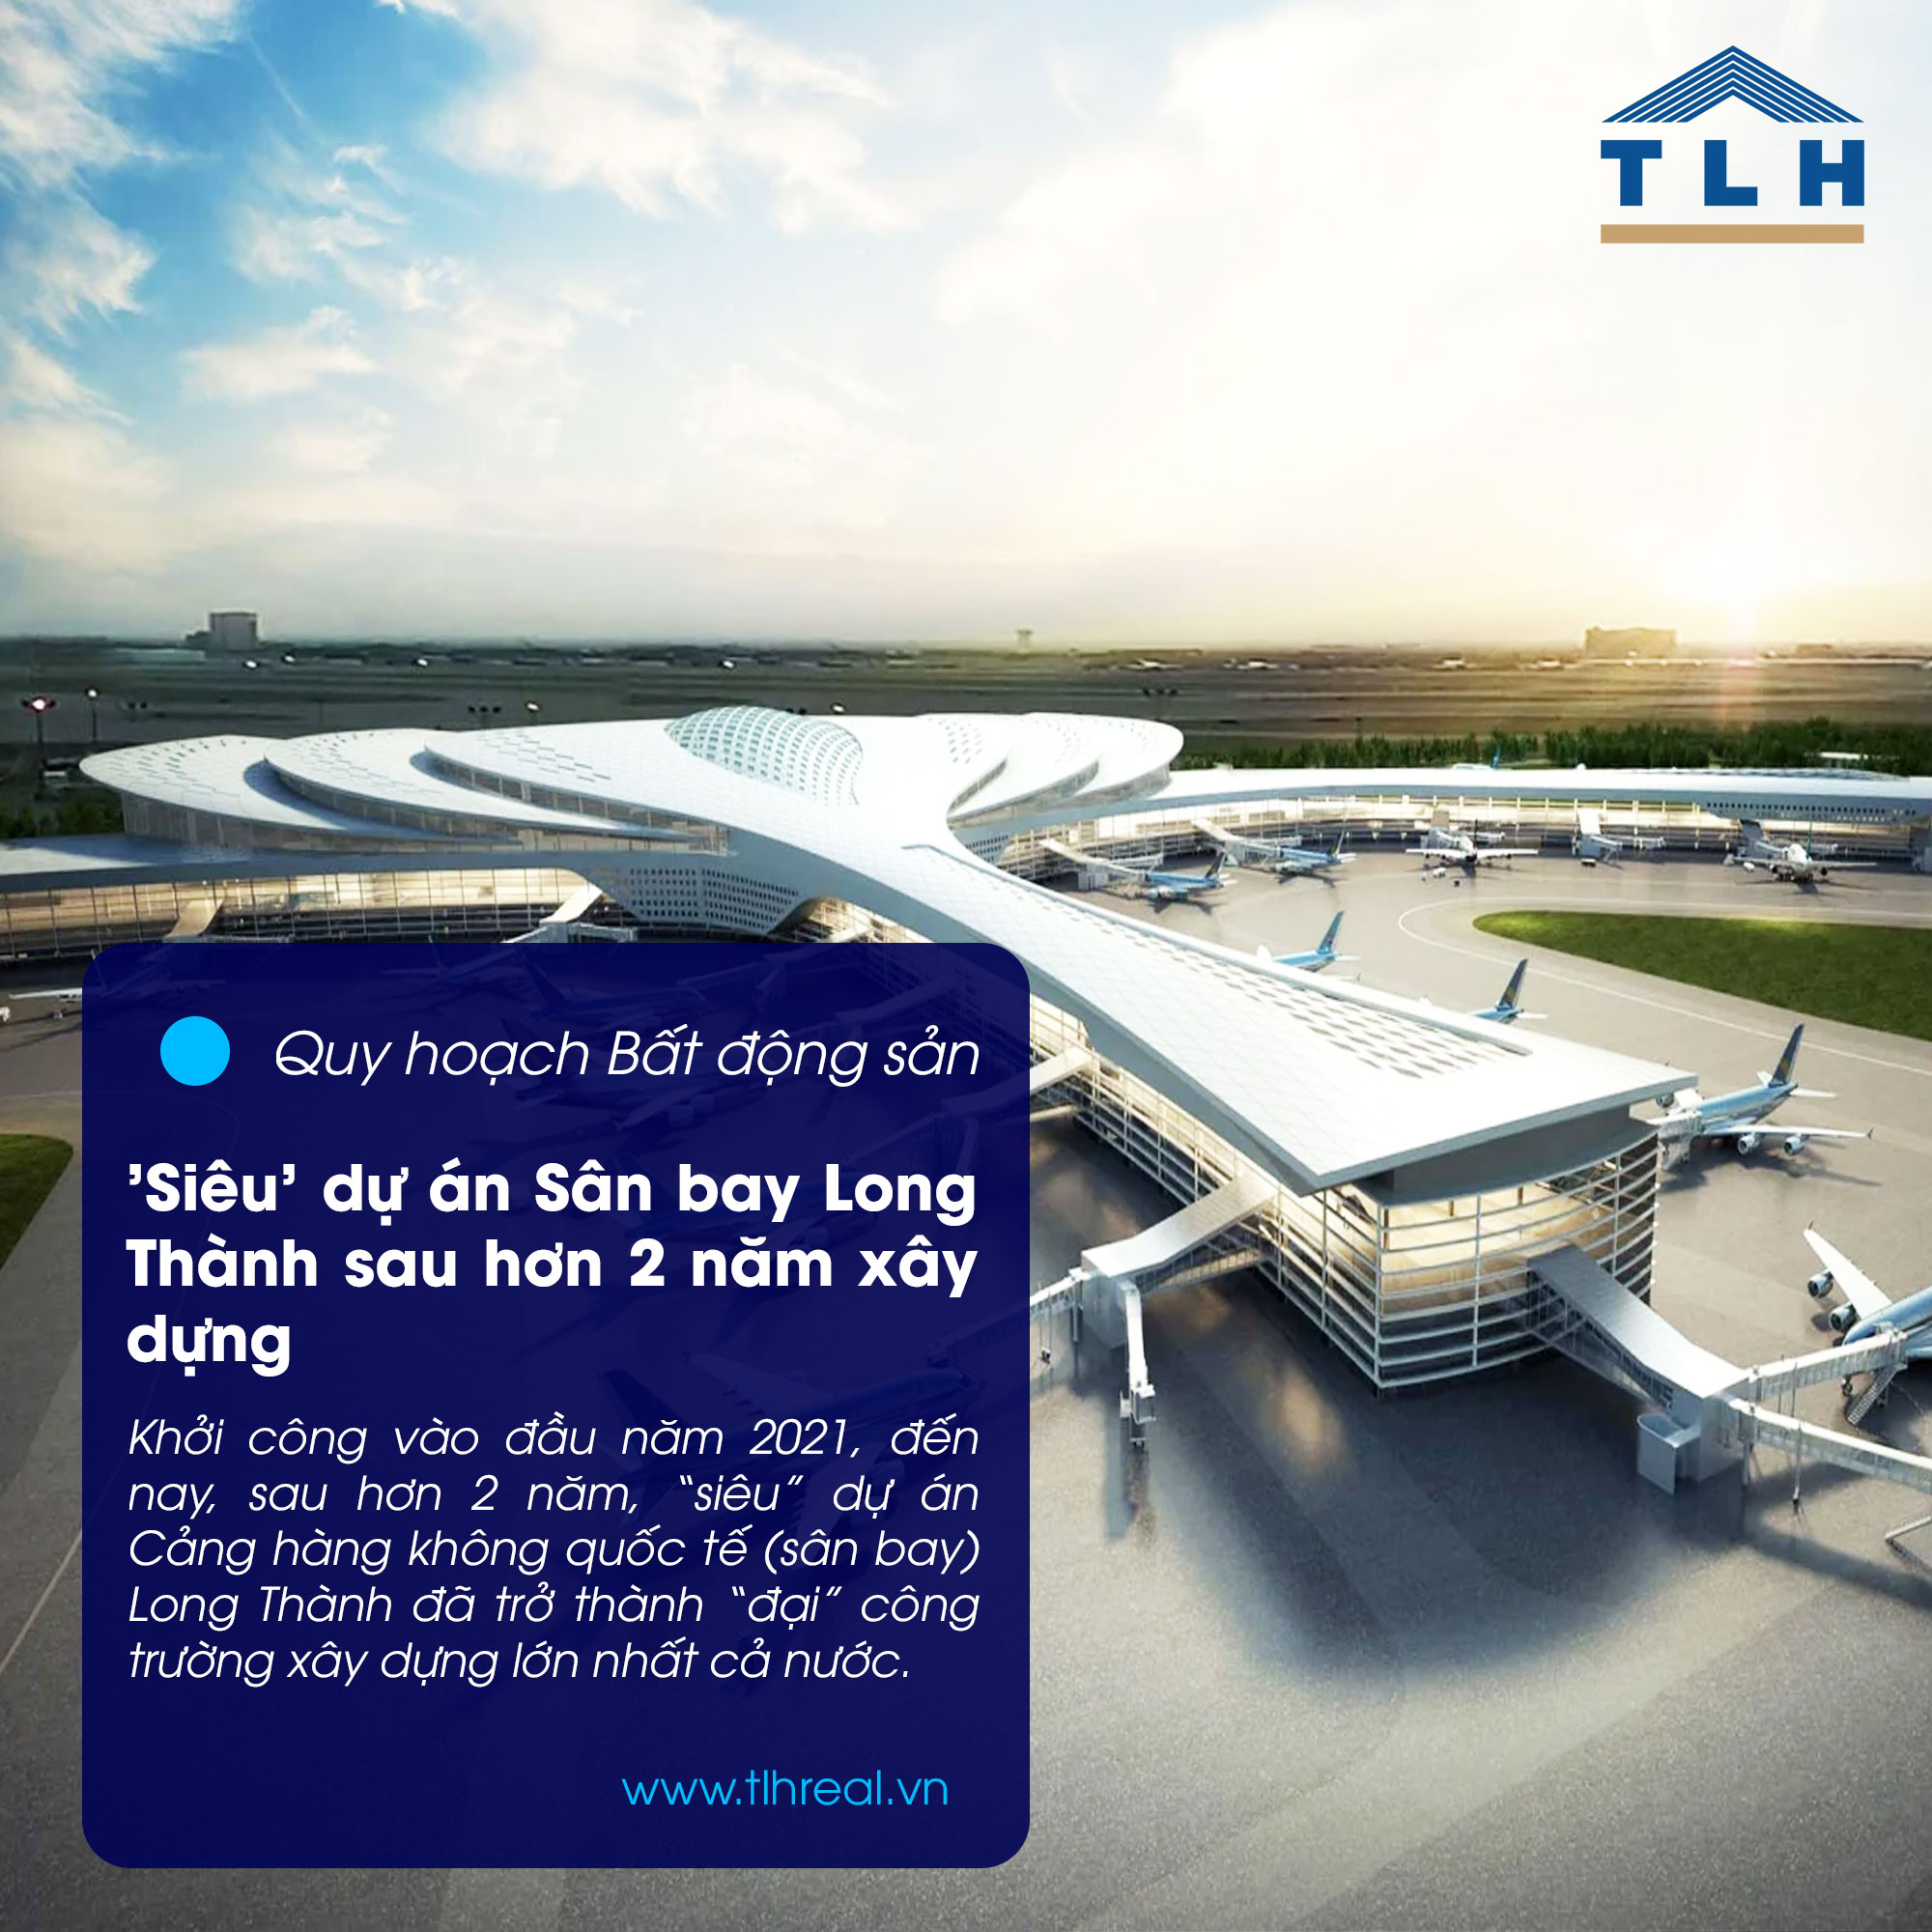 'Siêu' dự án Sân bay Long Thành sau hơn 2 năm xây dựng